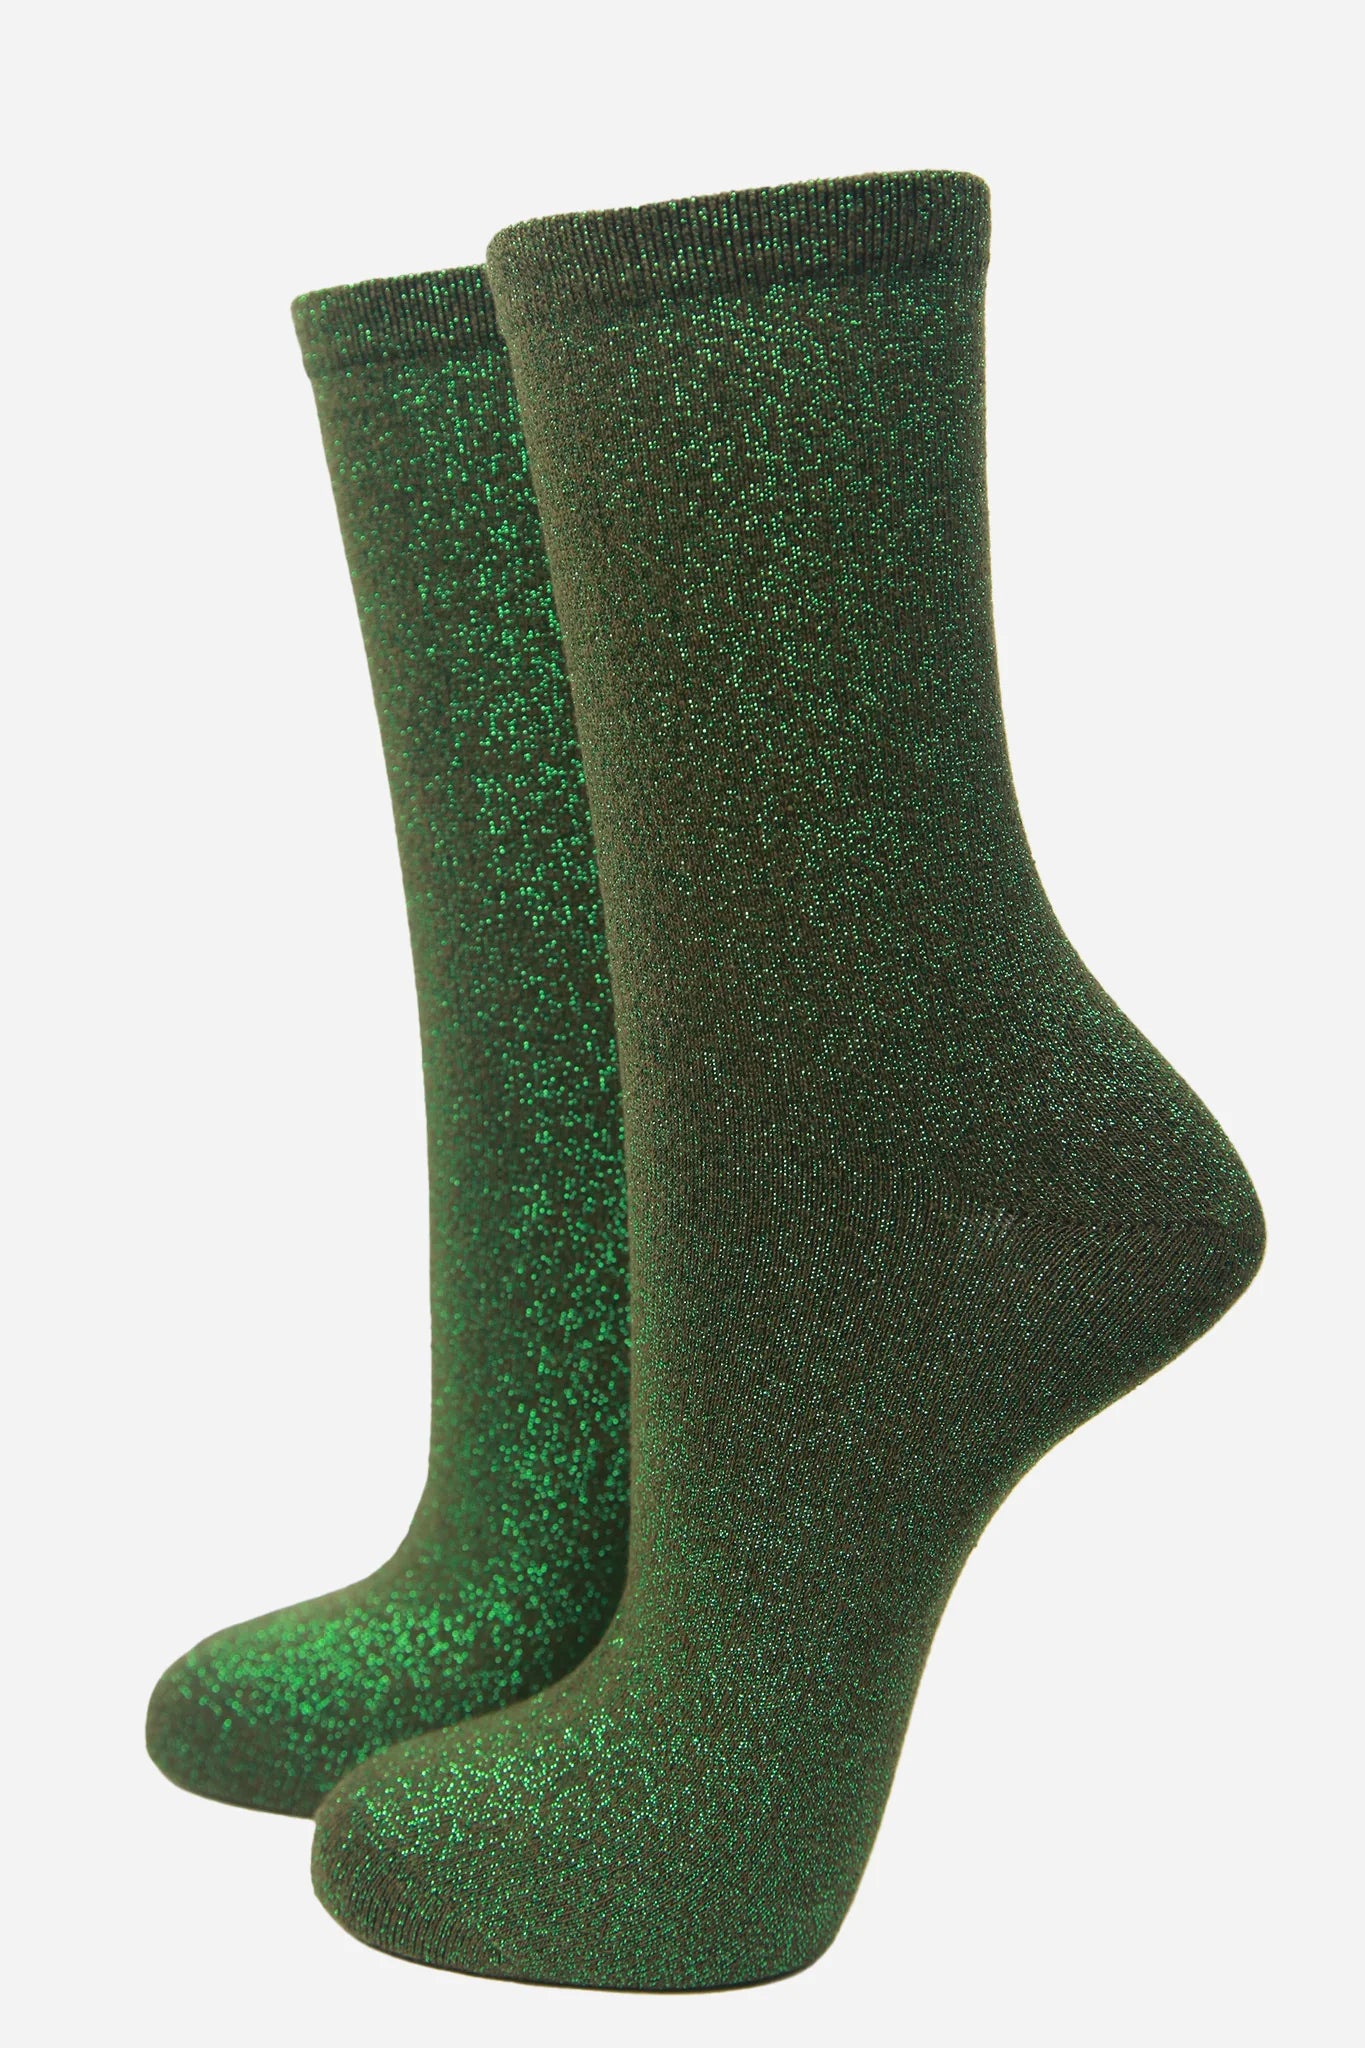 Glitter Socks - Khaki